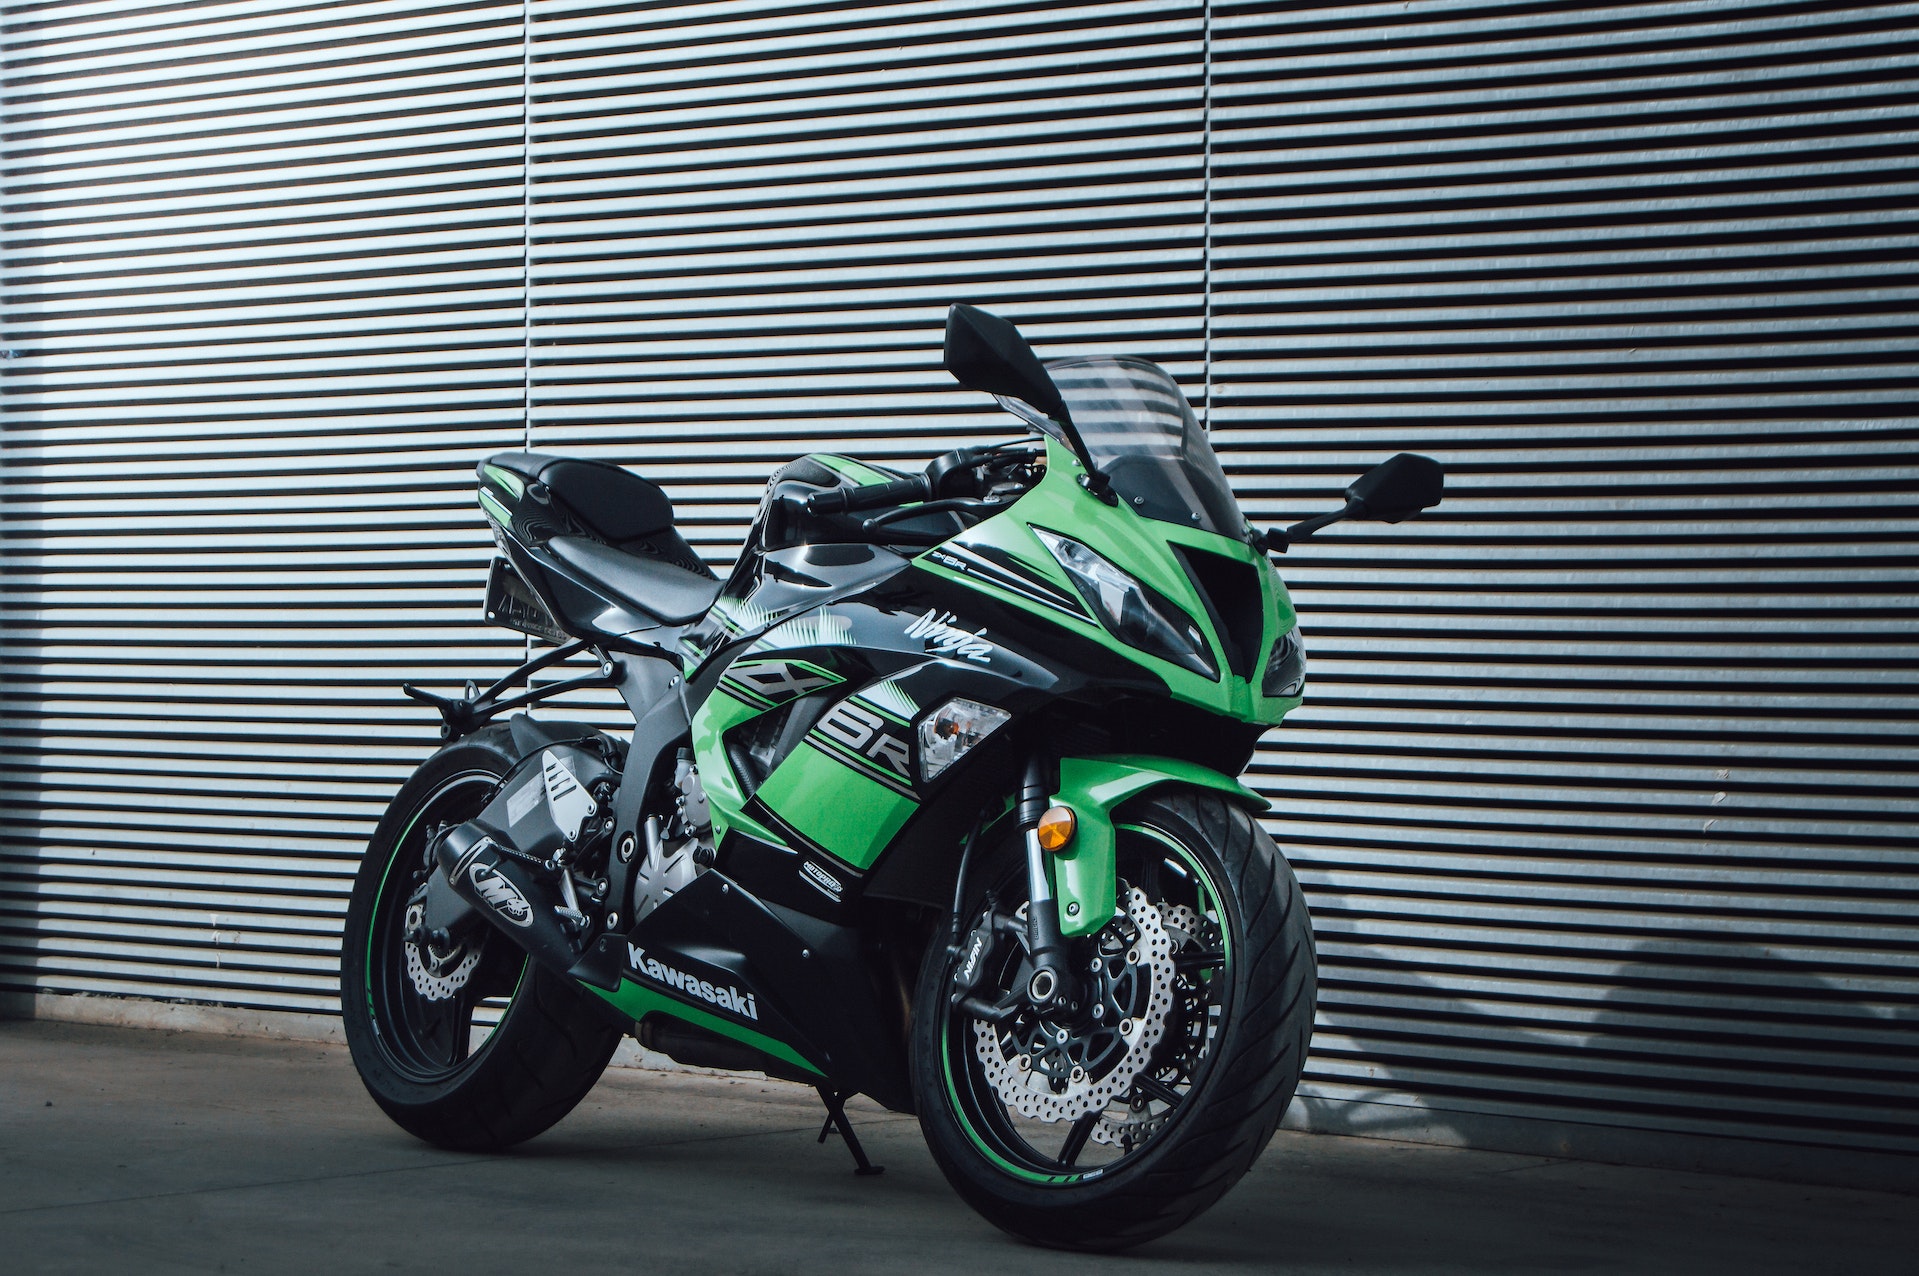 Ecco la Kawasaki Ninja ed il suo classico colore verde